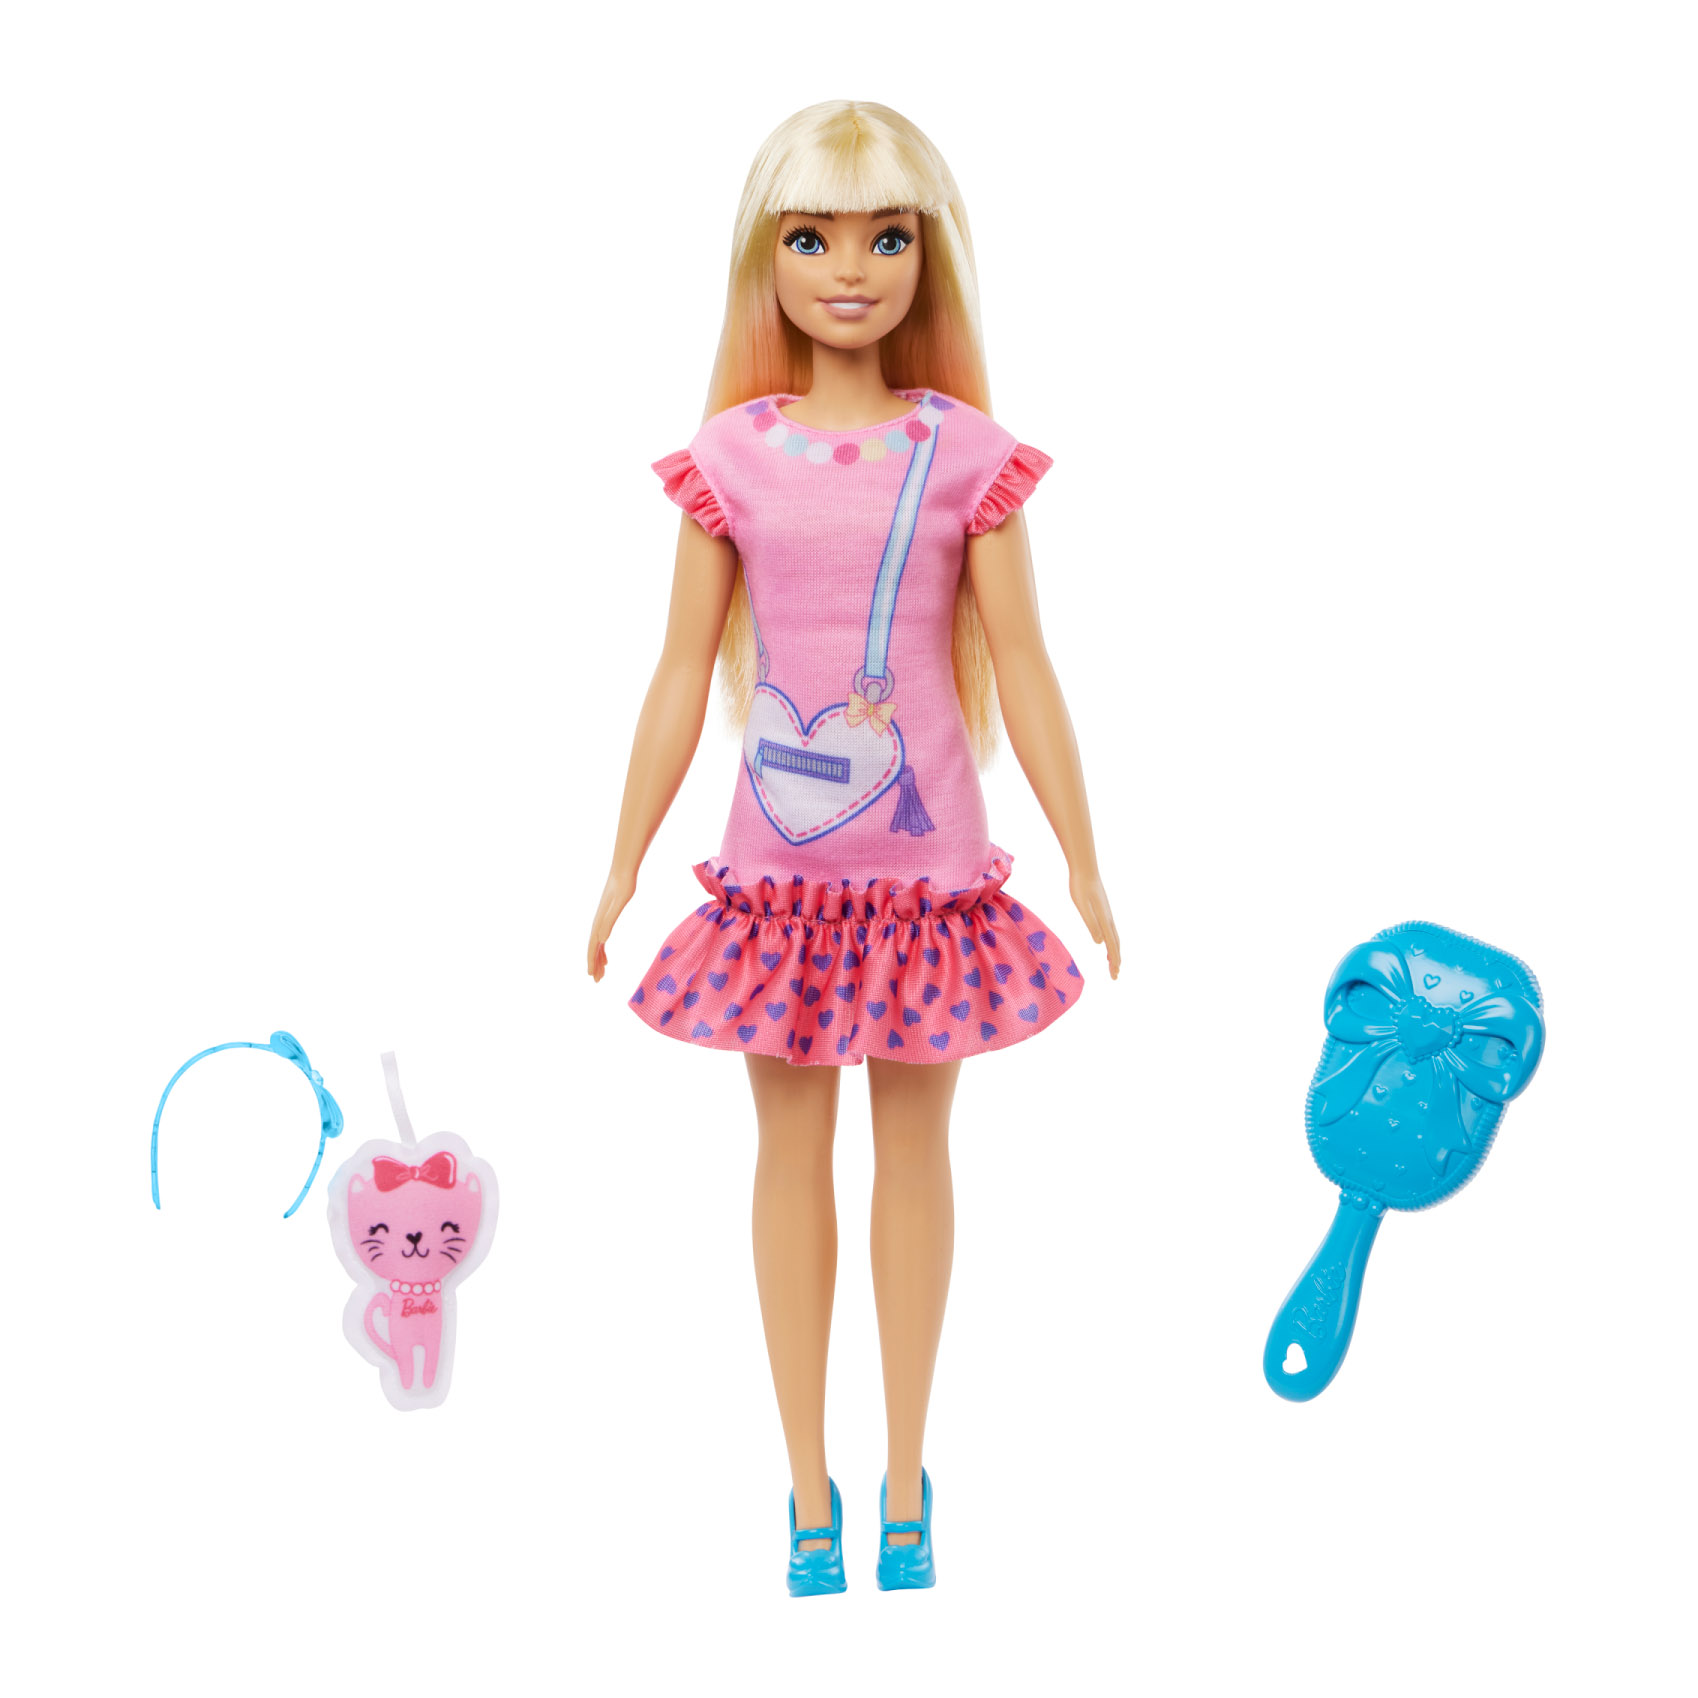 Riscopri la Barbie Story: più di una semplice bambola